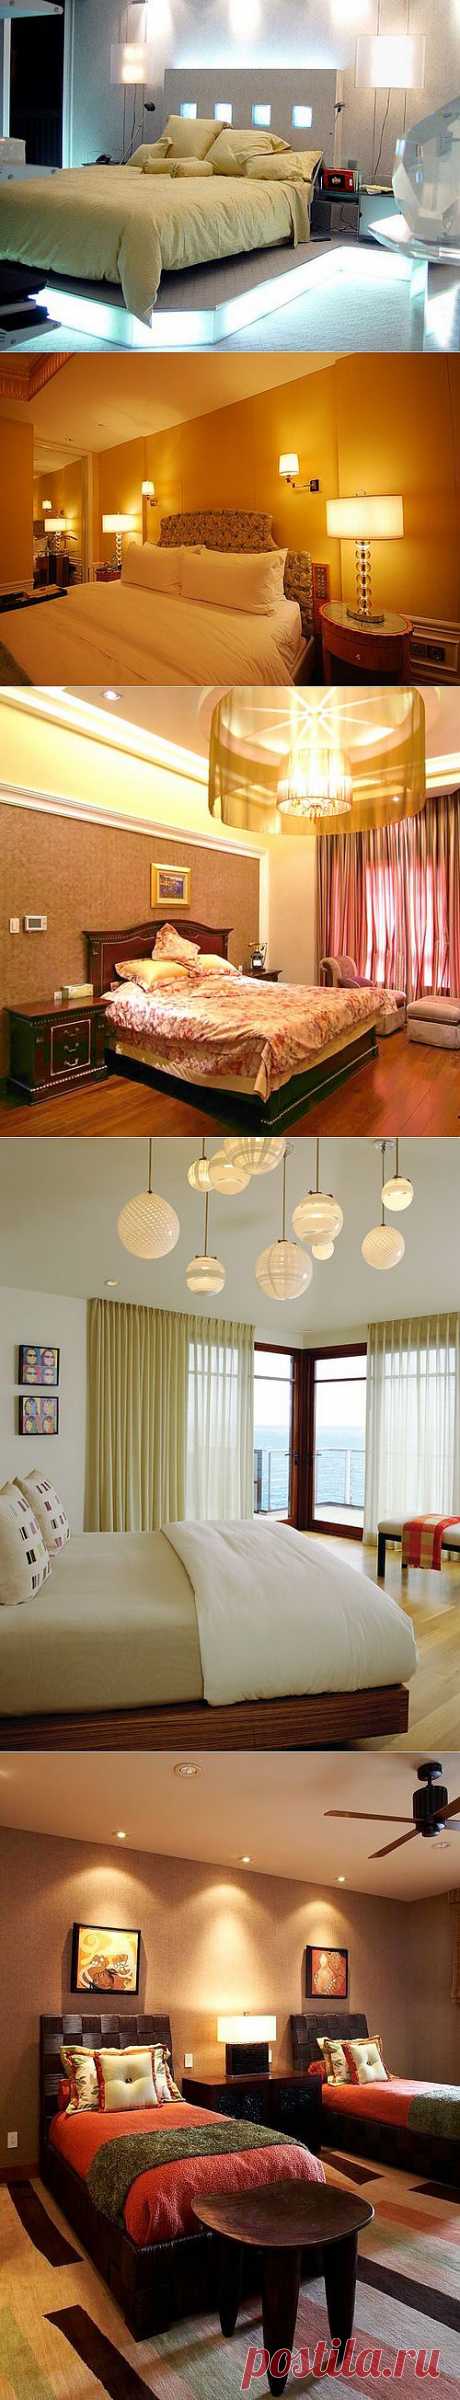 Освещение в спальне: виды светильников и декоративная подсветка | Дом Мечты